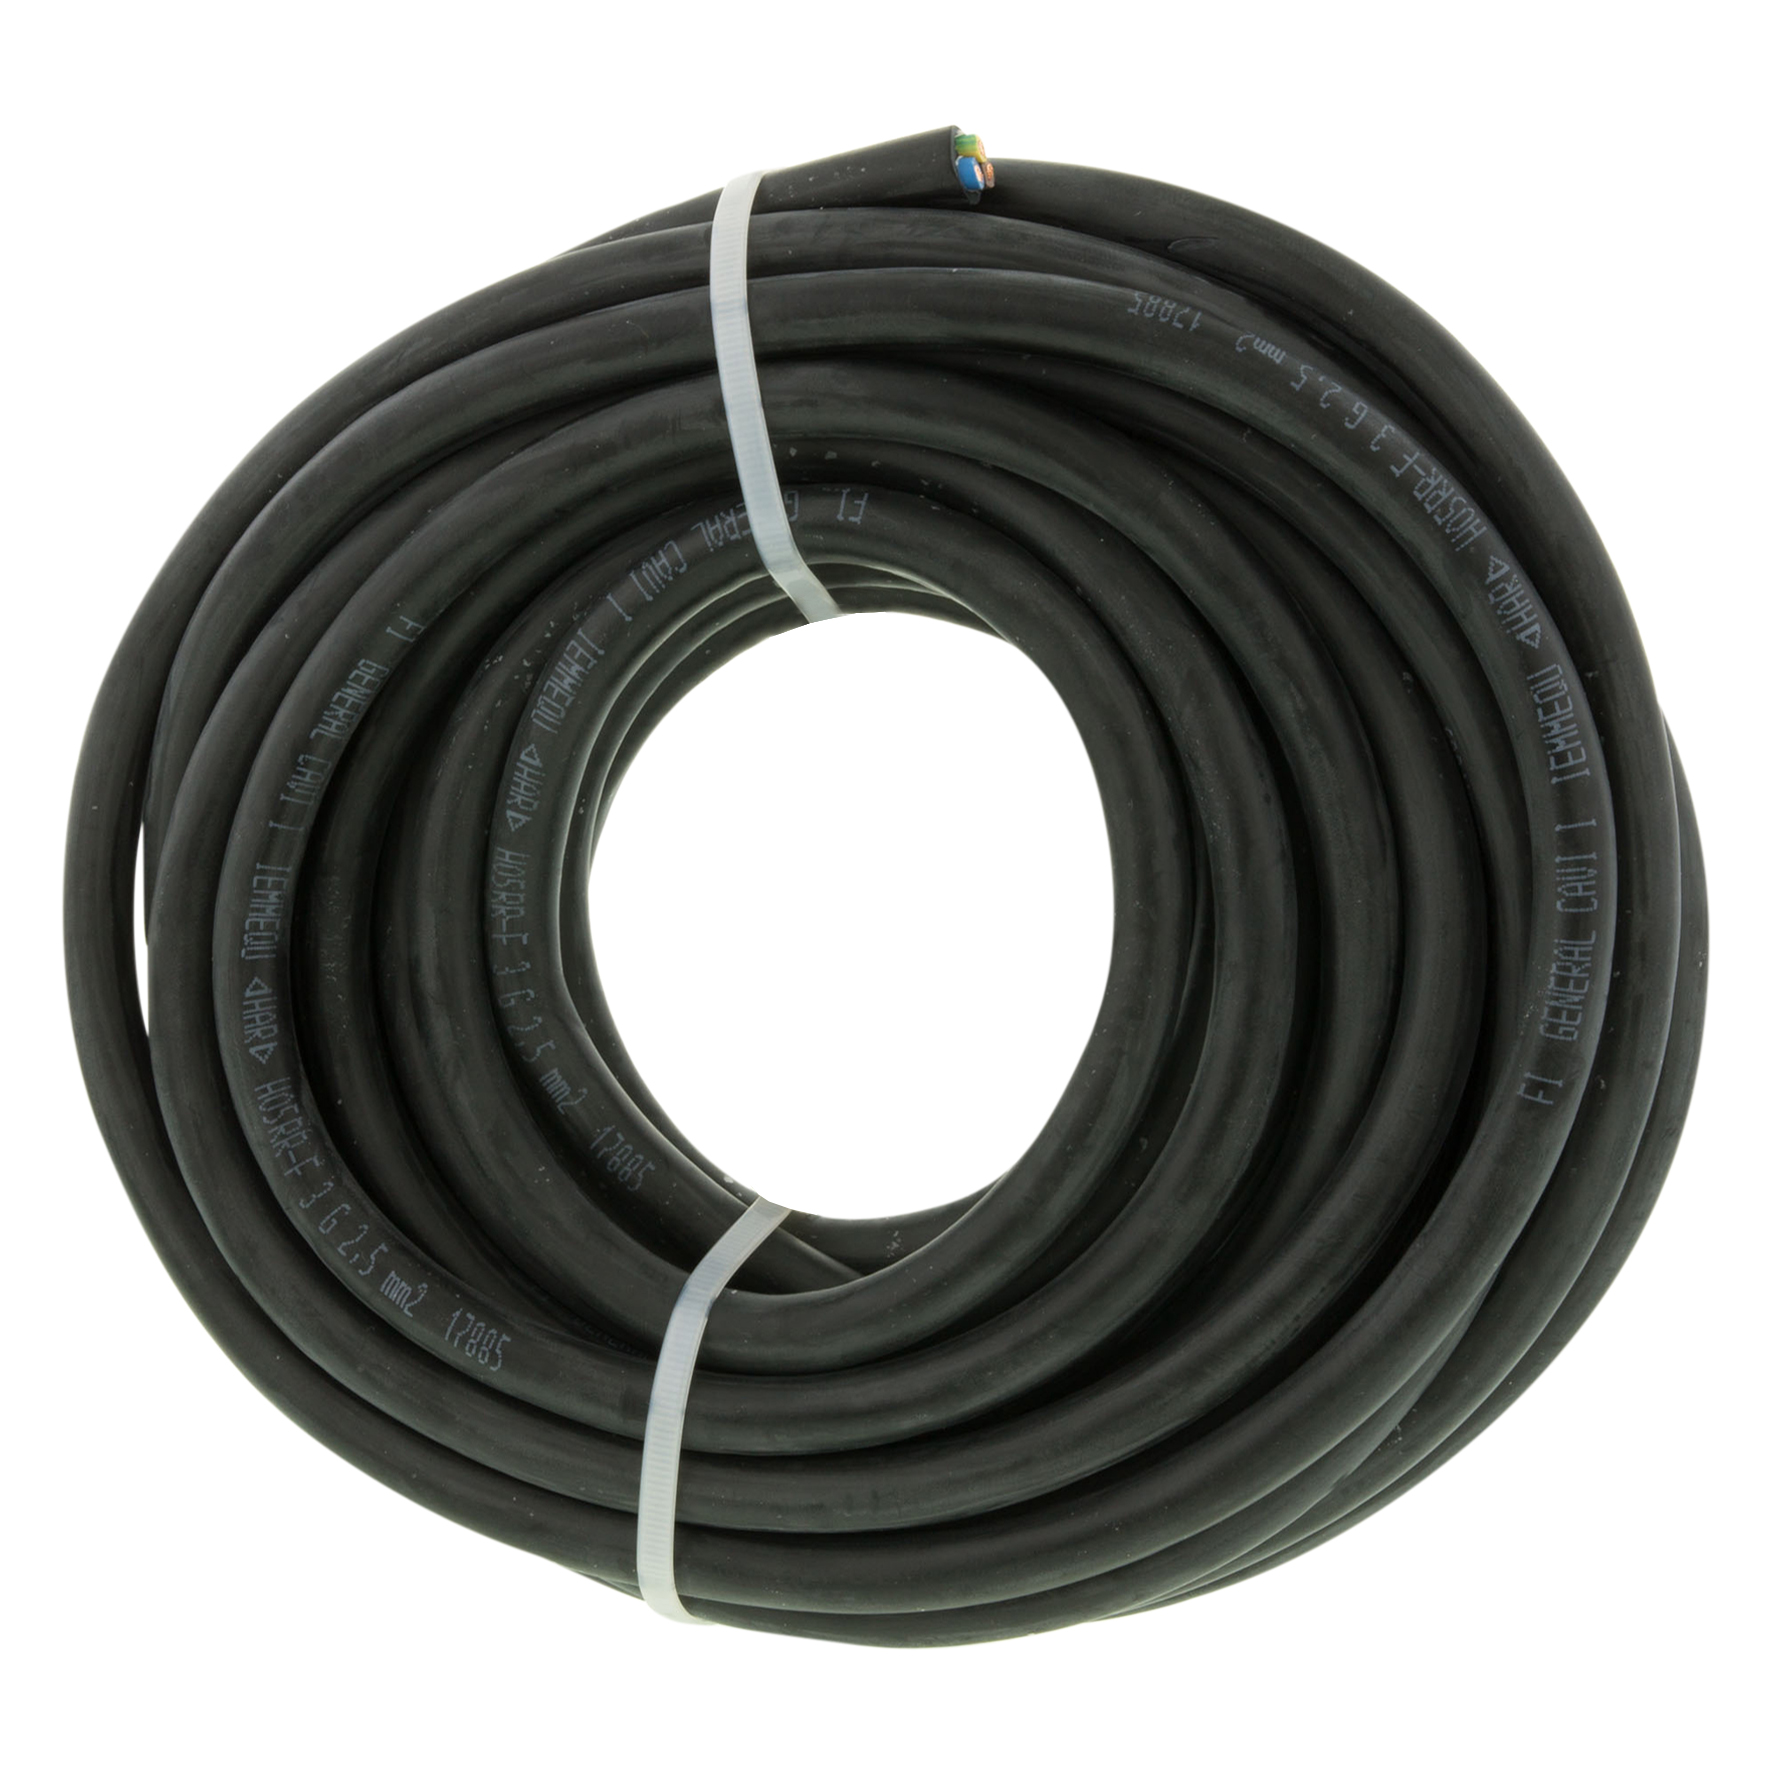 Rubber kabel